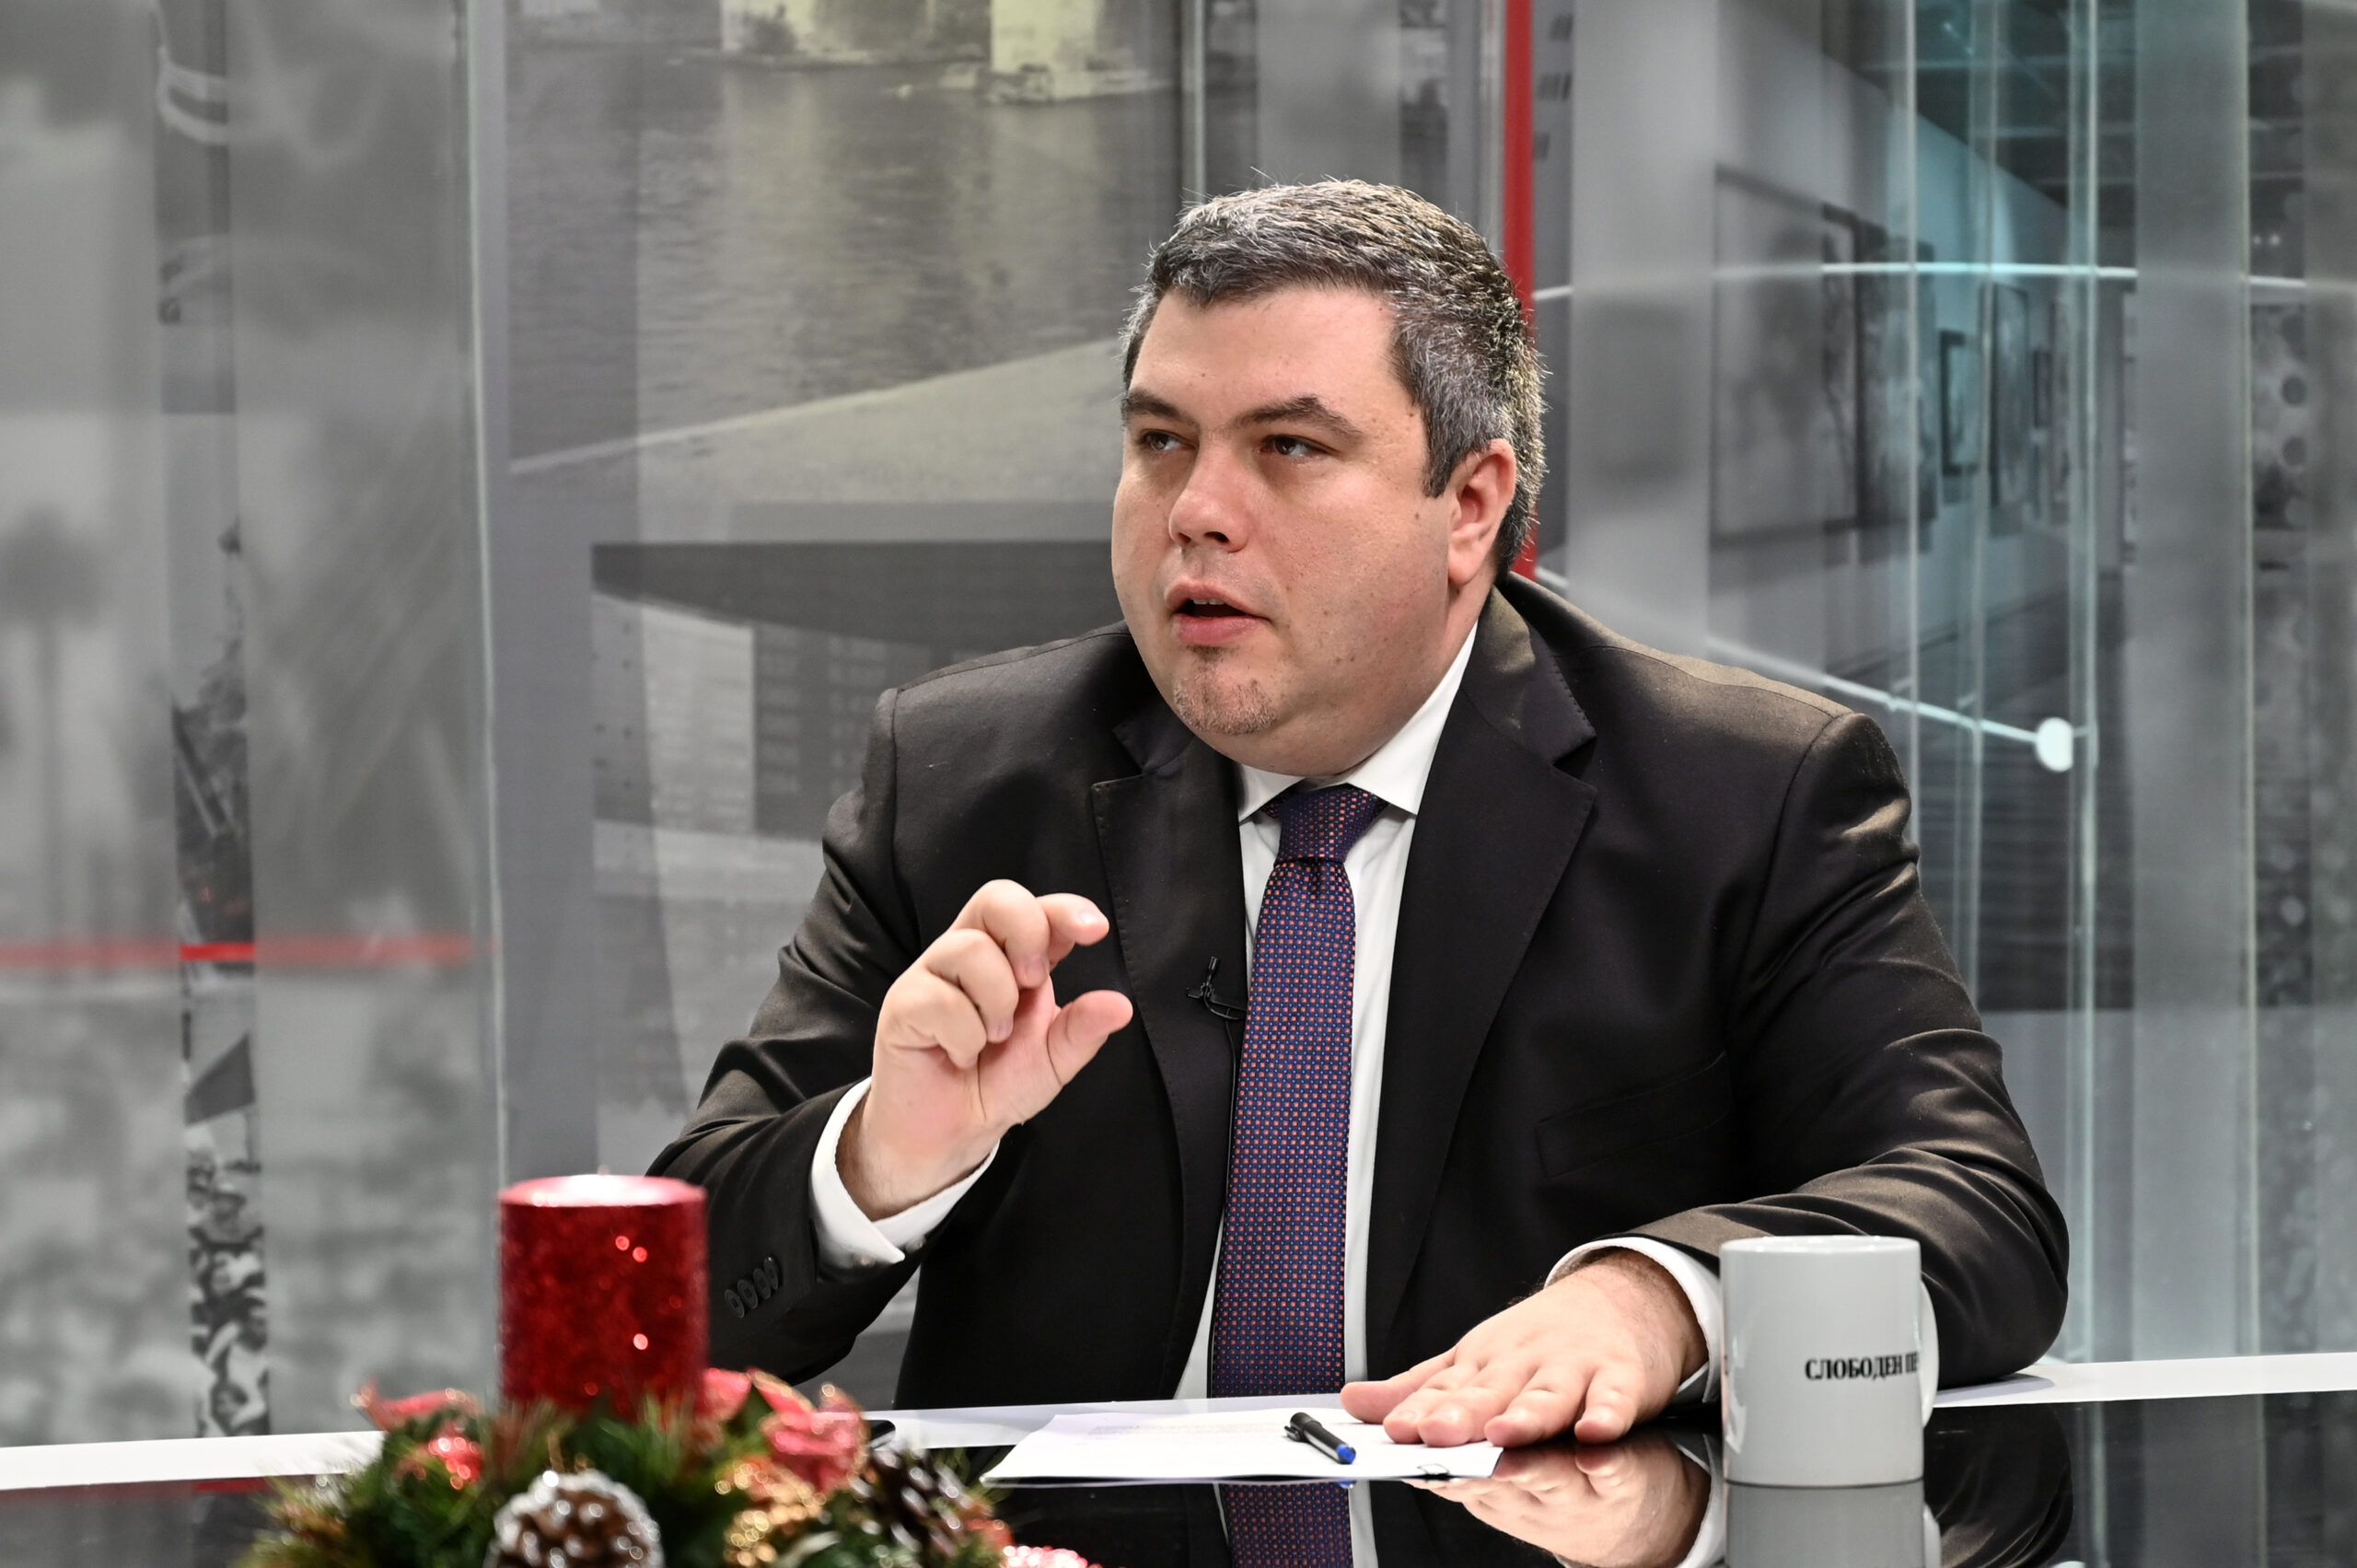 INTERVIEW VIDÉO  Maricic: Nous avons payé cher les illusions du VMRO-DPMNE  et cela ne devrait pas se répéter - Sloboden Pechat